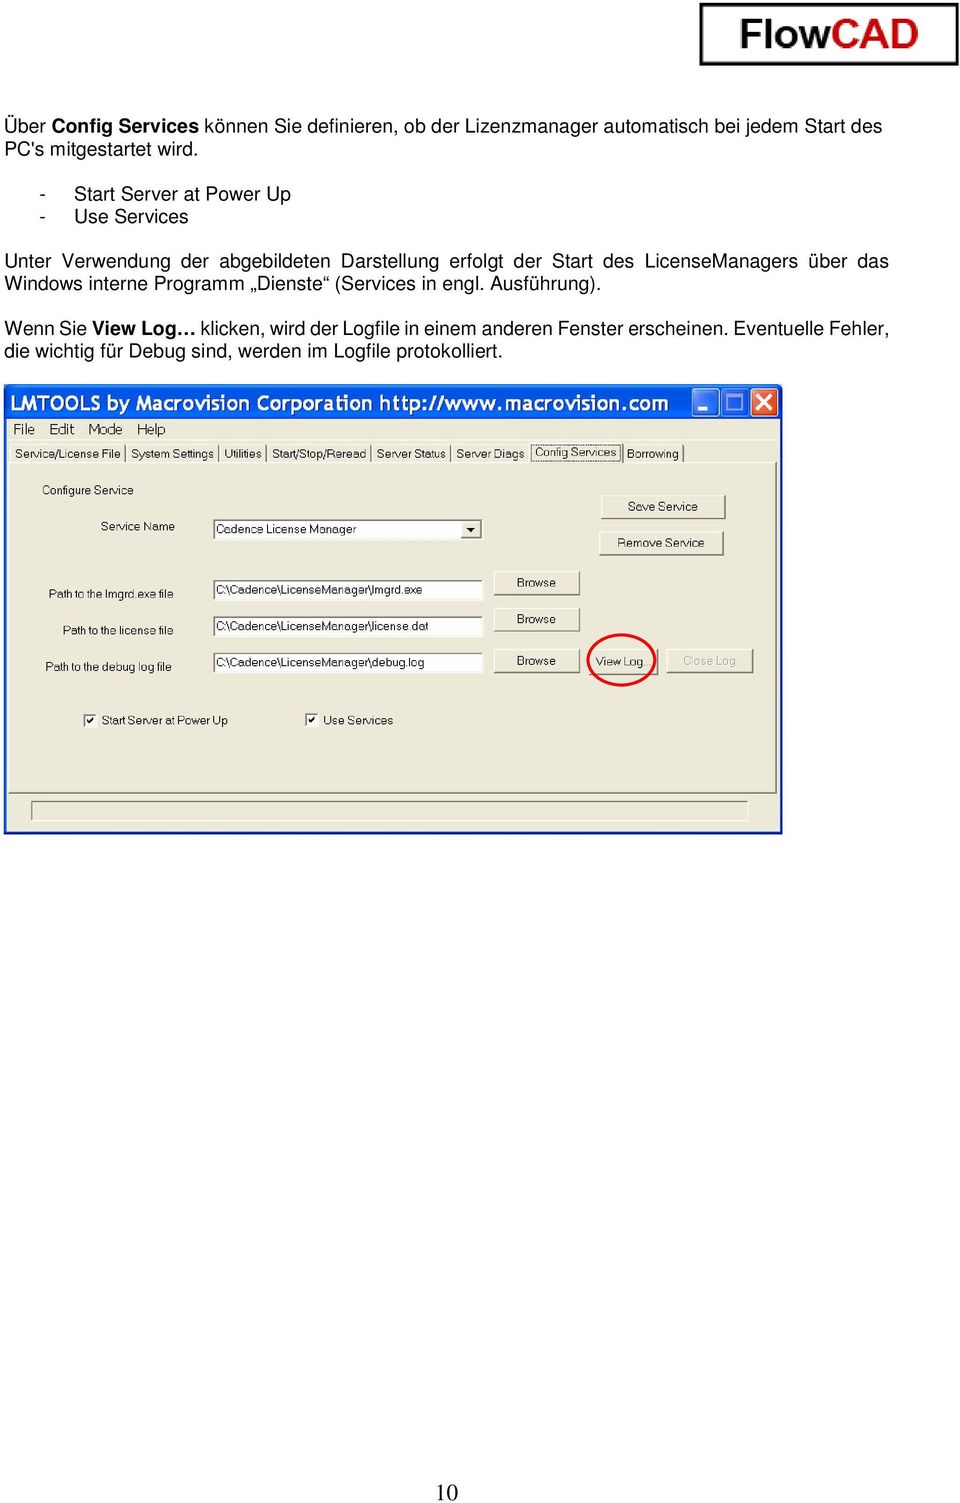 LicenseManagers über das Windows interne Programm Dienste (Services in engl. Ausführung).